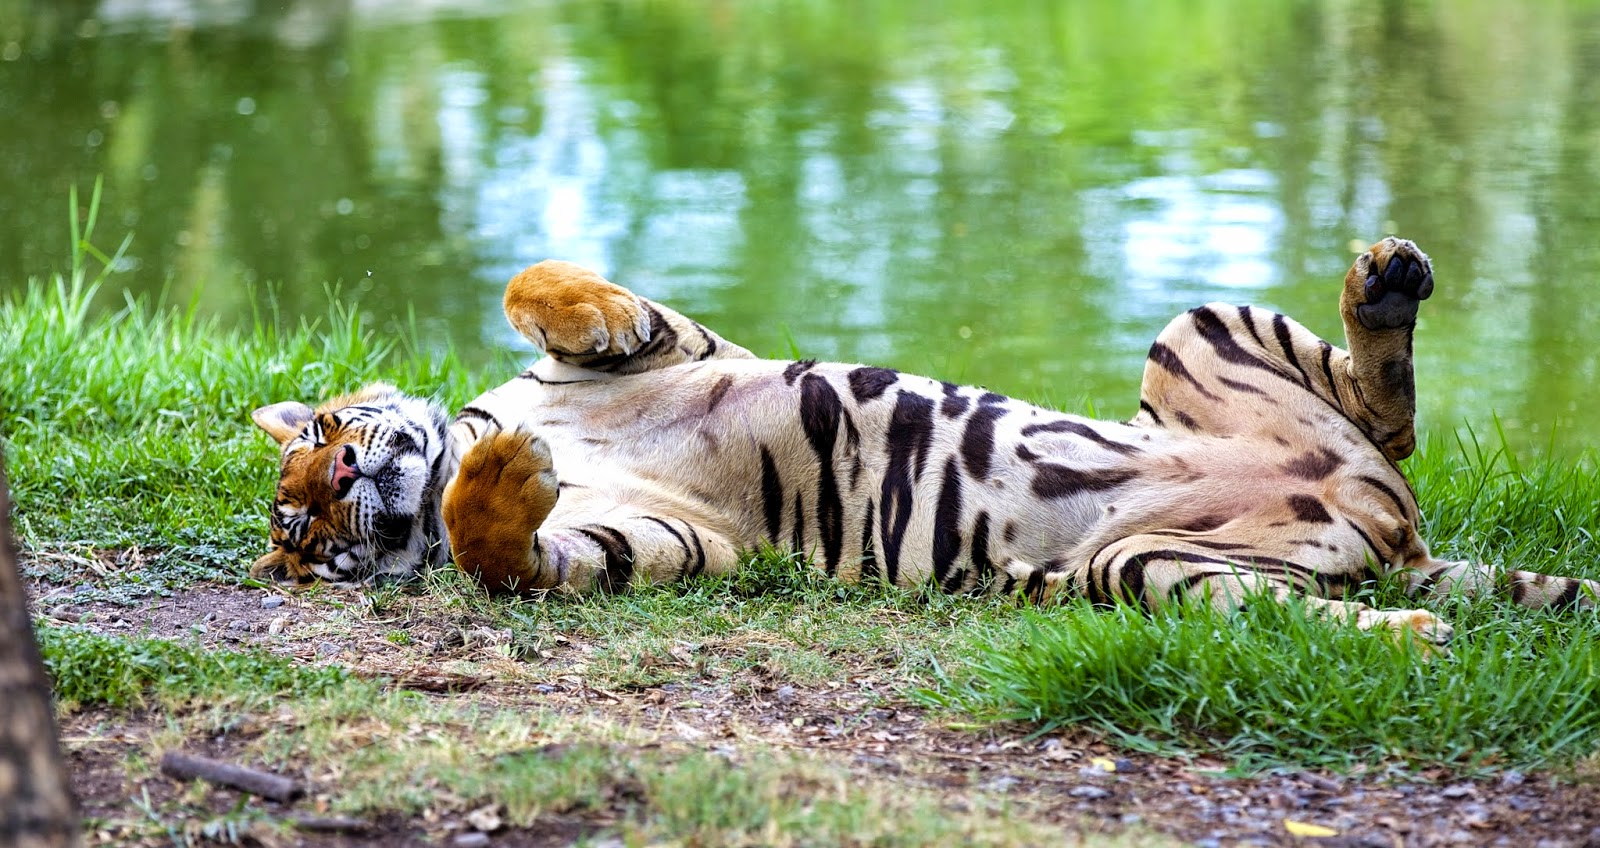 A tiger sleeping by a pond at Safari World Bangkok